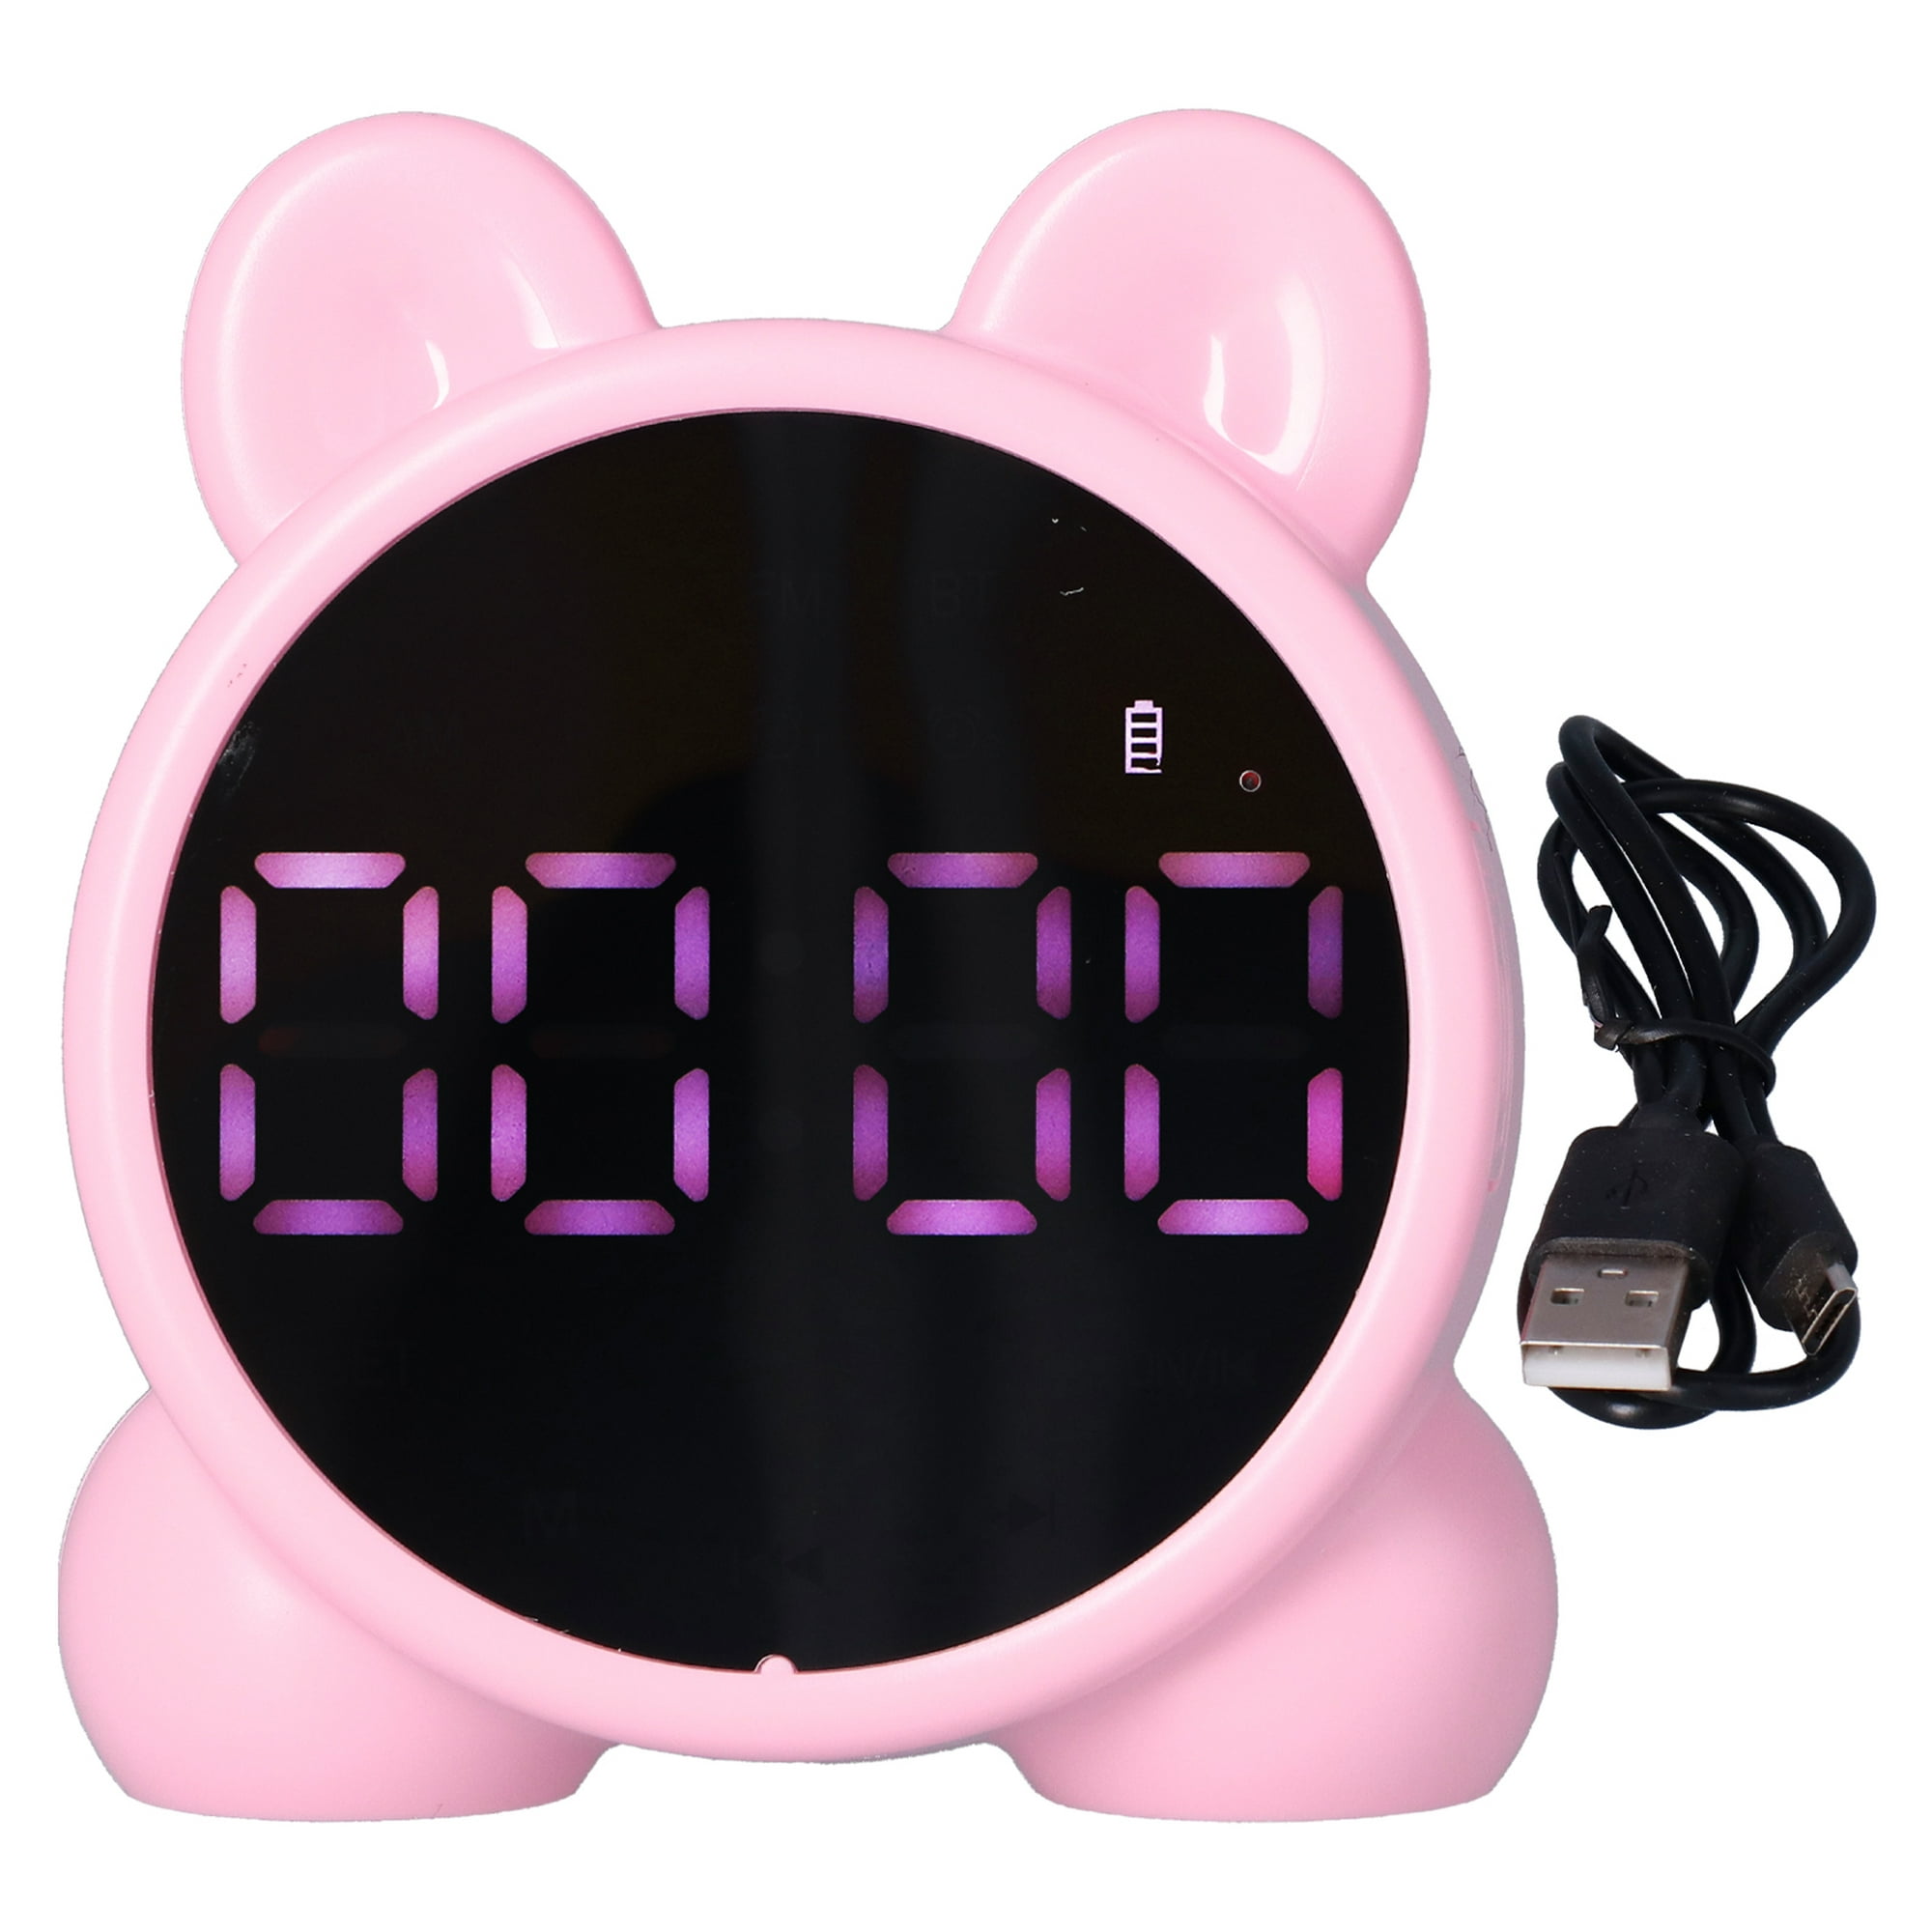 RV (Rosa Púrpura) Reloj Despertador para Niños Números Luminosos, Reloj  Despertador LED Luz Nocturna, Mañana y Noche Niños Volumen Ajustable  Posponer USB Recargable Reloj Despertador Luz Nocturna oso de fresa  Electrónica